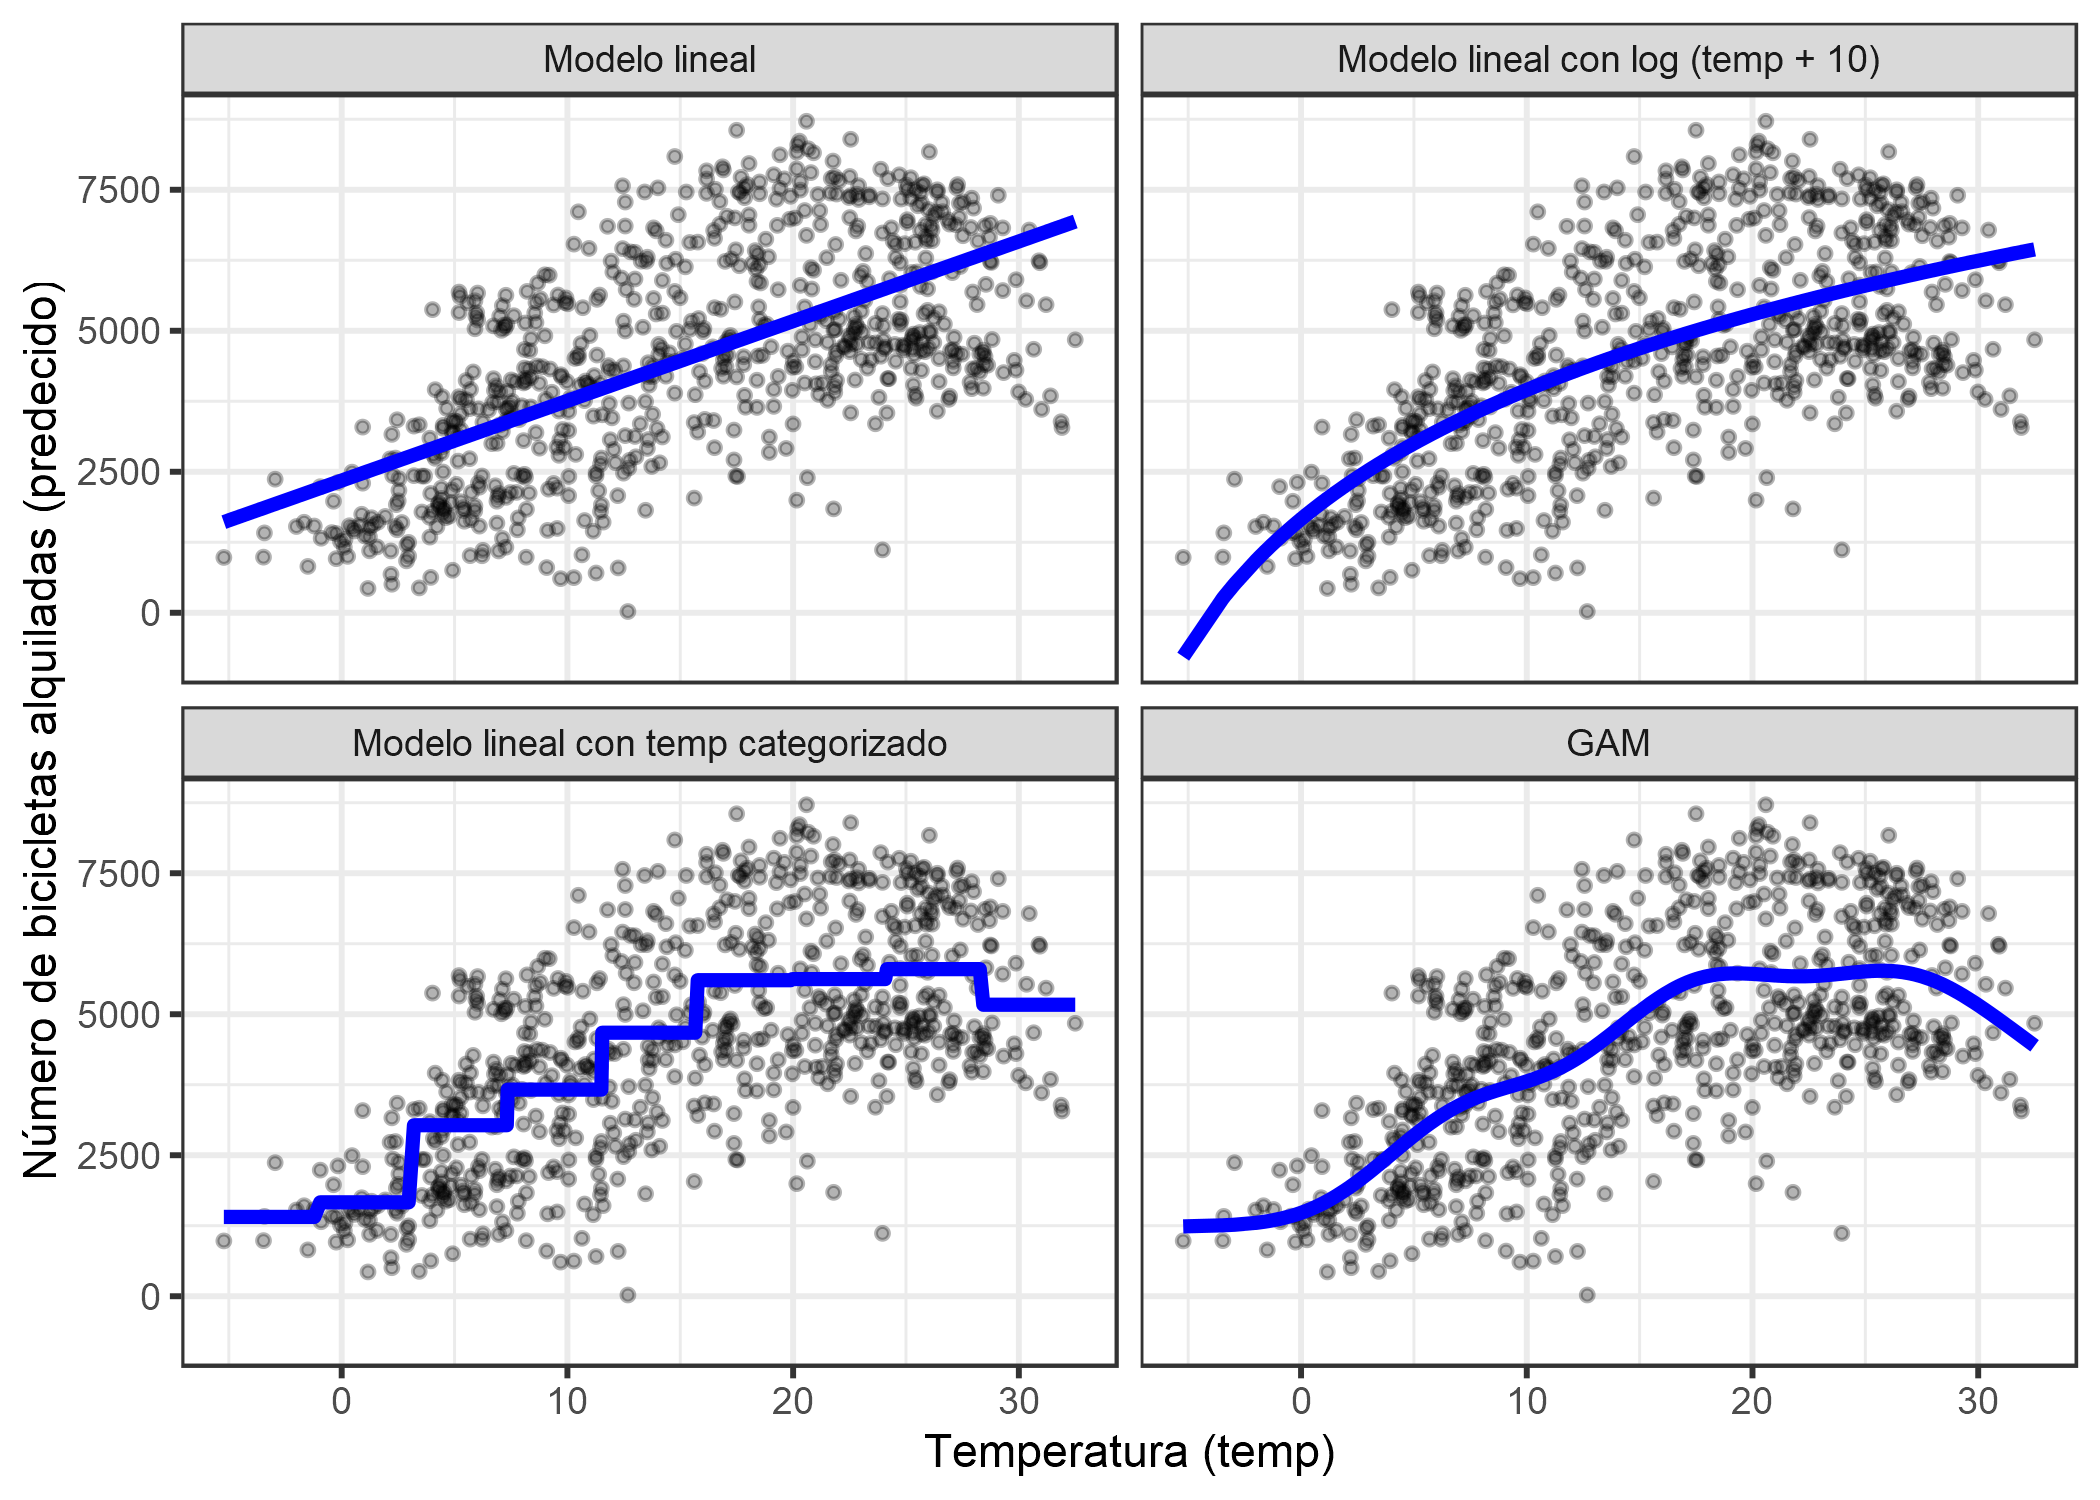 Predicción del número de bicicletas alquiladas utilizando solo la variable de temperatura. Un modelo lineal (arriba a la izquierda) no se ajusta bien a los datos. Una solución es transformar la función con, por ejemplo, logaritmo (arriba a la derecha), clasificarlo (abajo a la izquierda), que generalmente es una mala decisión, o usar modelos de aditivos generalizados que puedan ajustarse automáticamente a una curva suave de temperatura (abajo a la derecha).